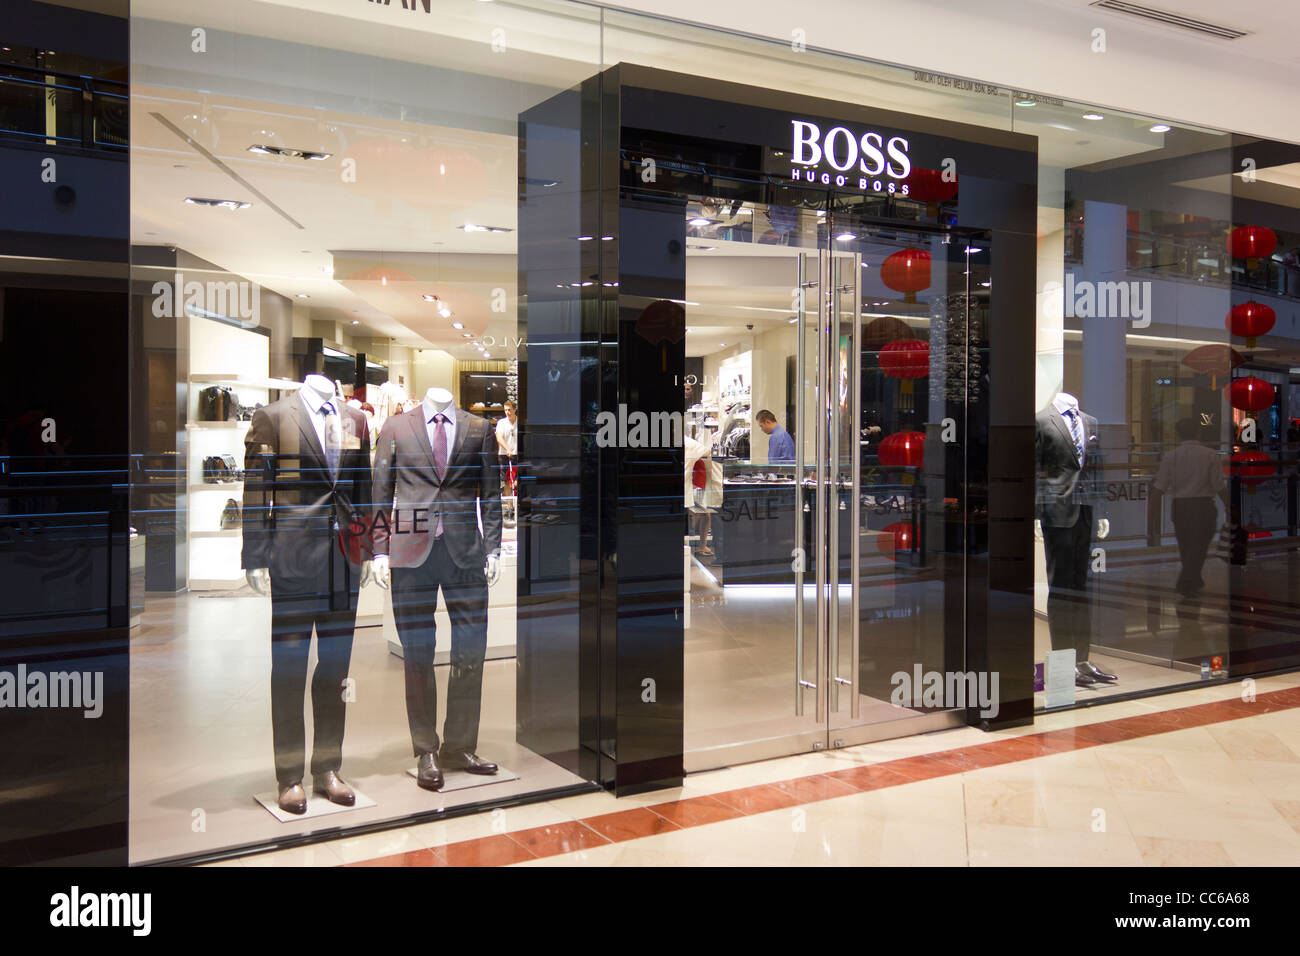 Boss store, Suria KLCC, Kuala Lumpur, Malaysia Stock Photo